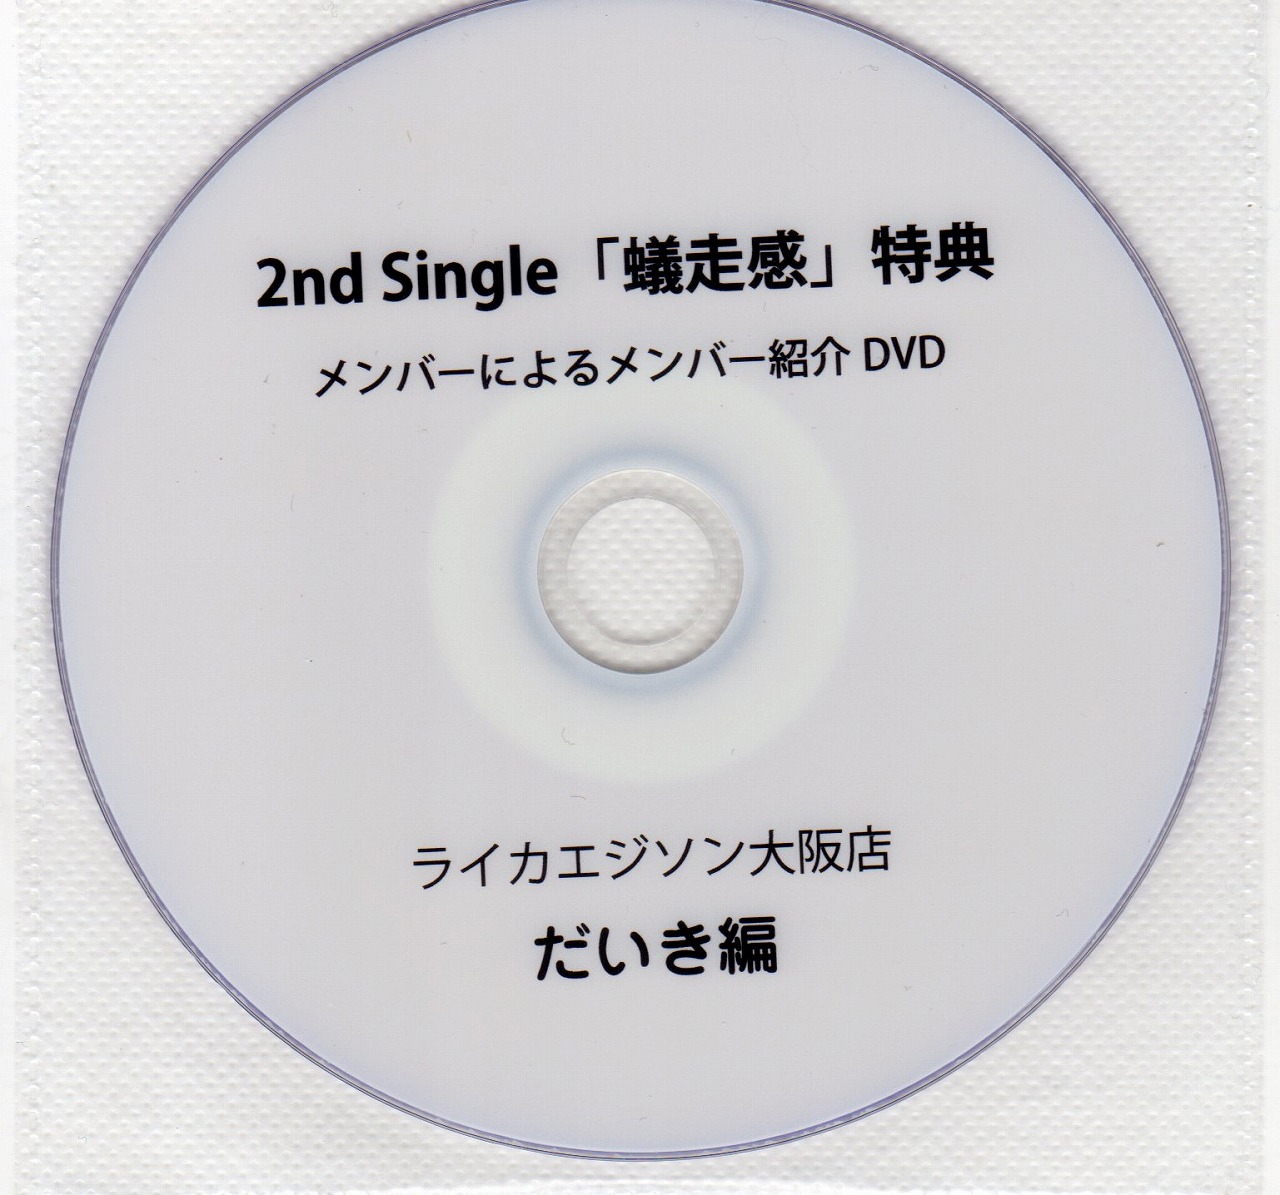 アリ の DVD 【LIKE AN EDISON】2nd Single「蟻走感」 メンバーによるメンバー紹介DVD だいき編